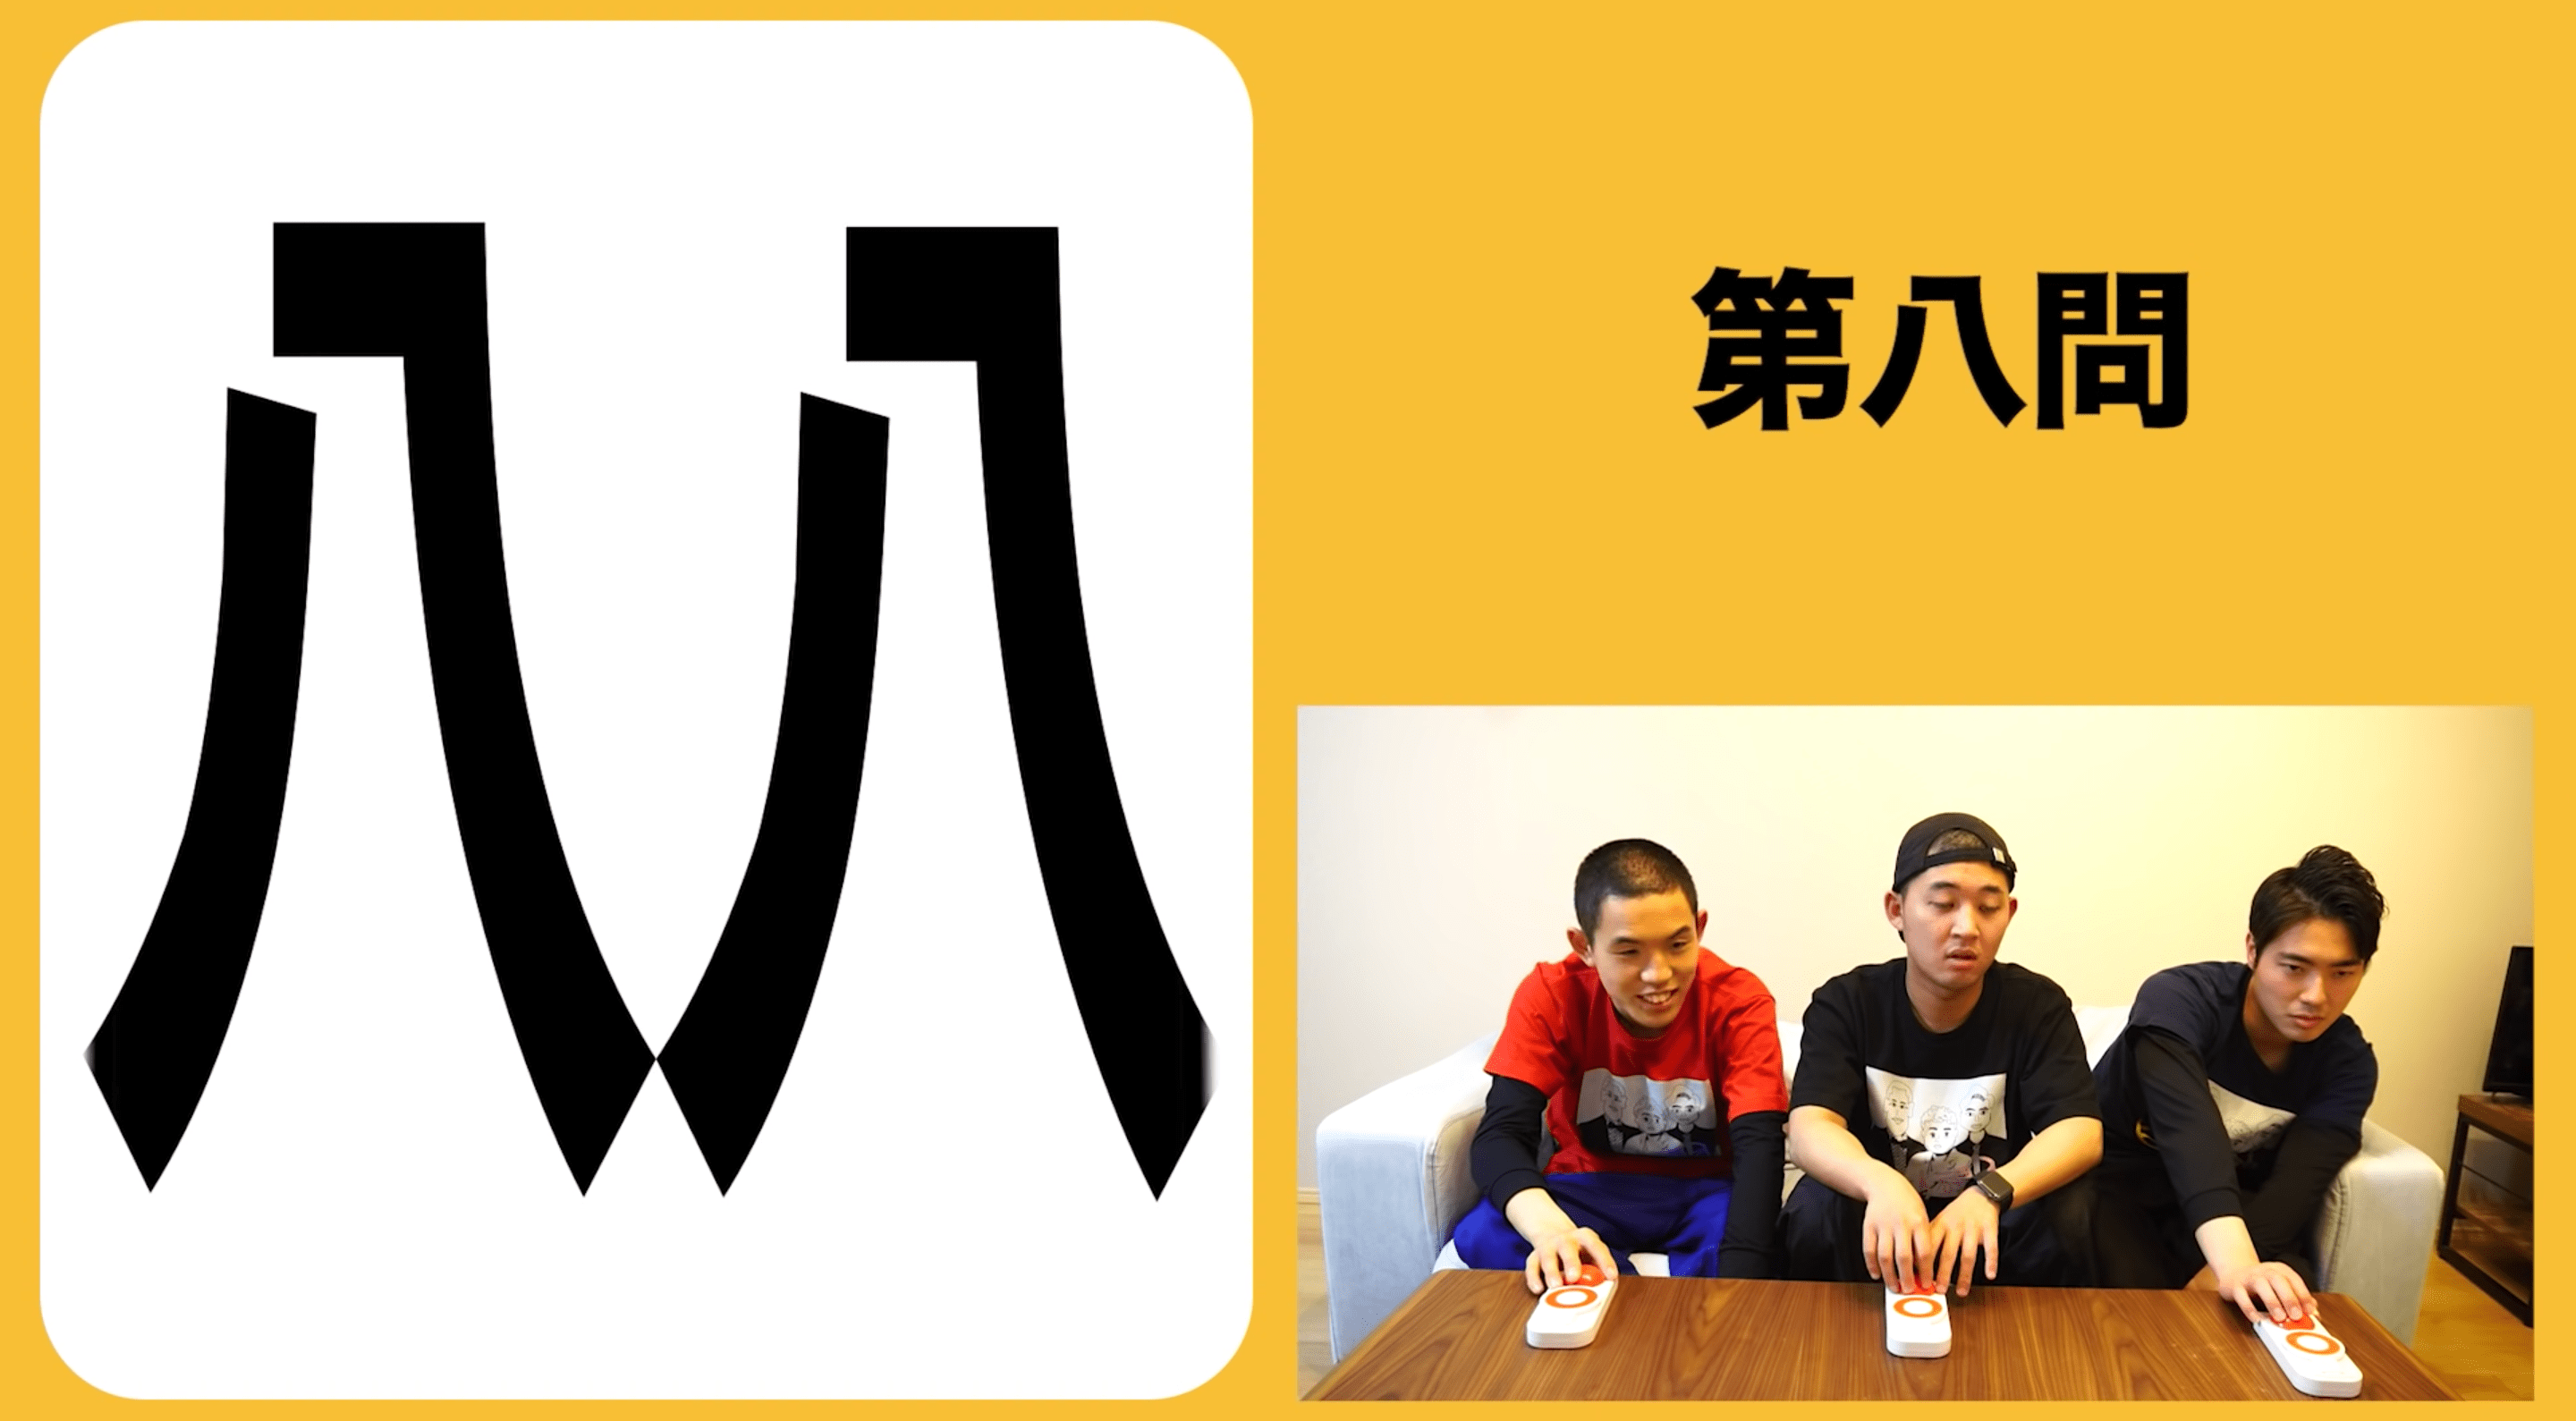 この漢字 読めるかな 解けたら 芸人力検定 1級レベルかも